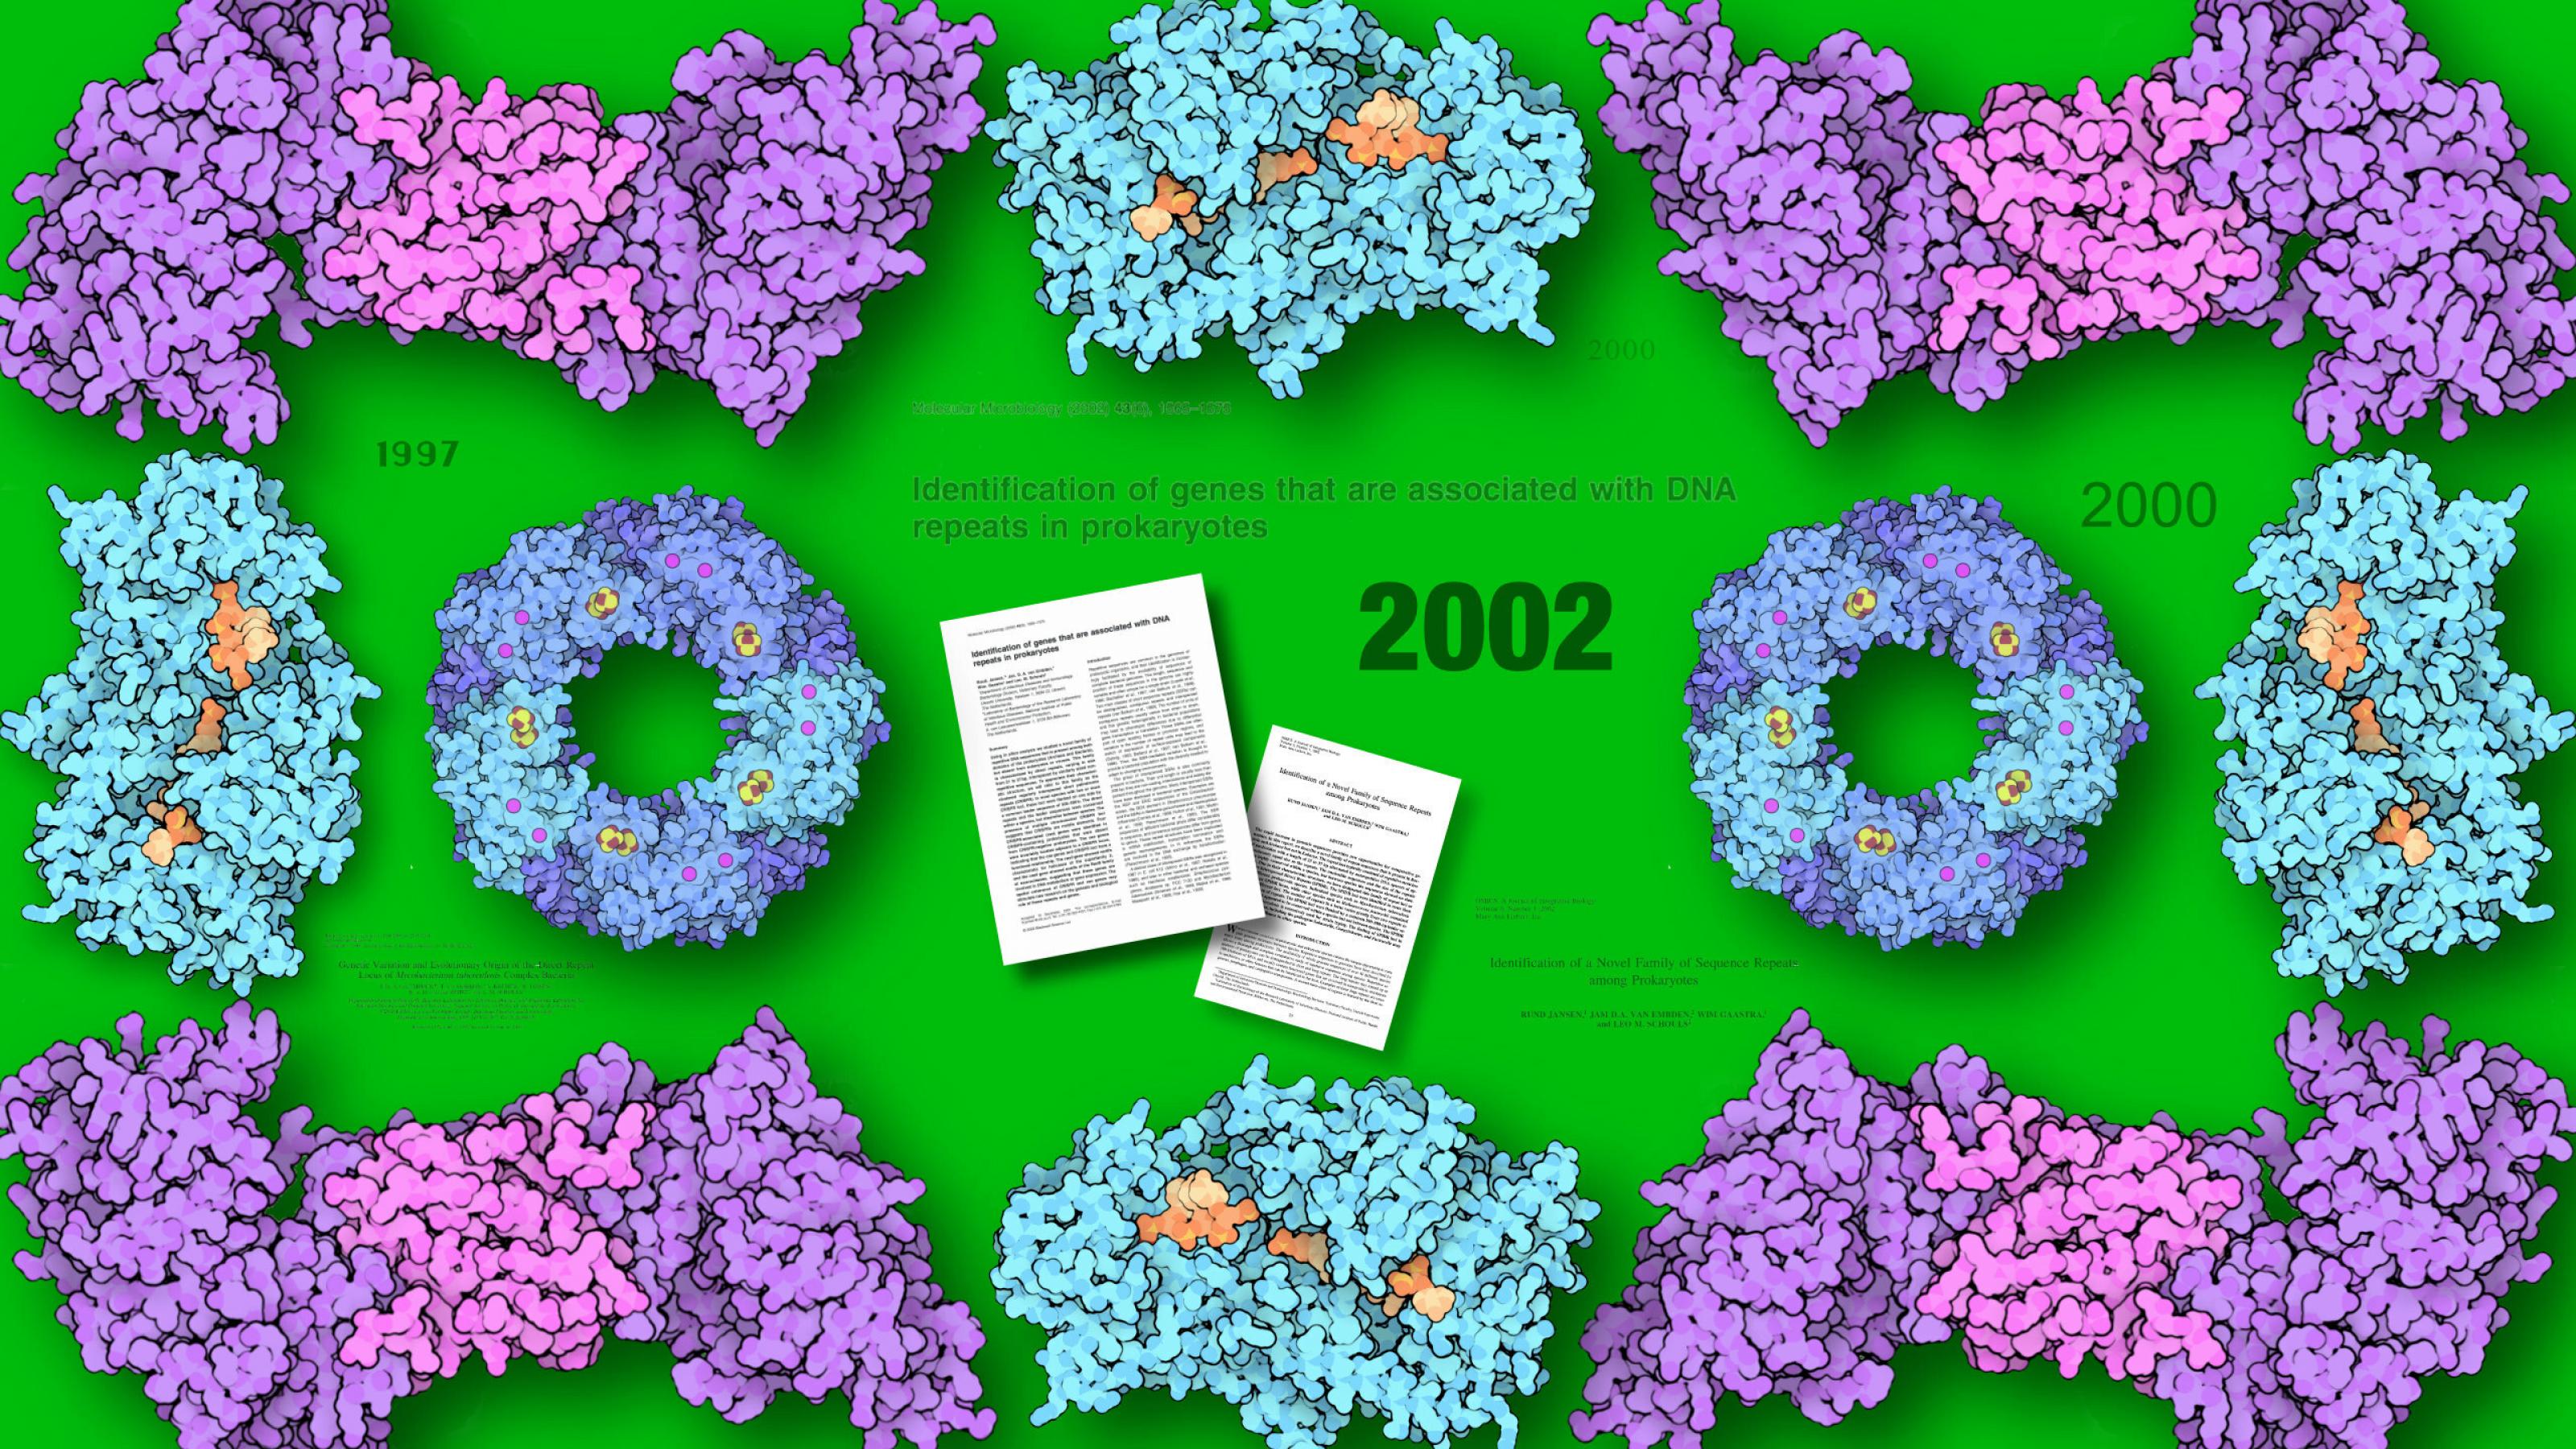 Verschiedene Cas-Proteine Cas1 bis Cas4 ornamental symmetrisch vor grünem Hintergrund platziert und  in der Mitte die Titel und die Titelseiten der beiden Fachartikel, die Ruud Jansen 2002 veröffentlicht hat.